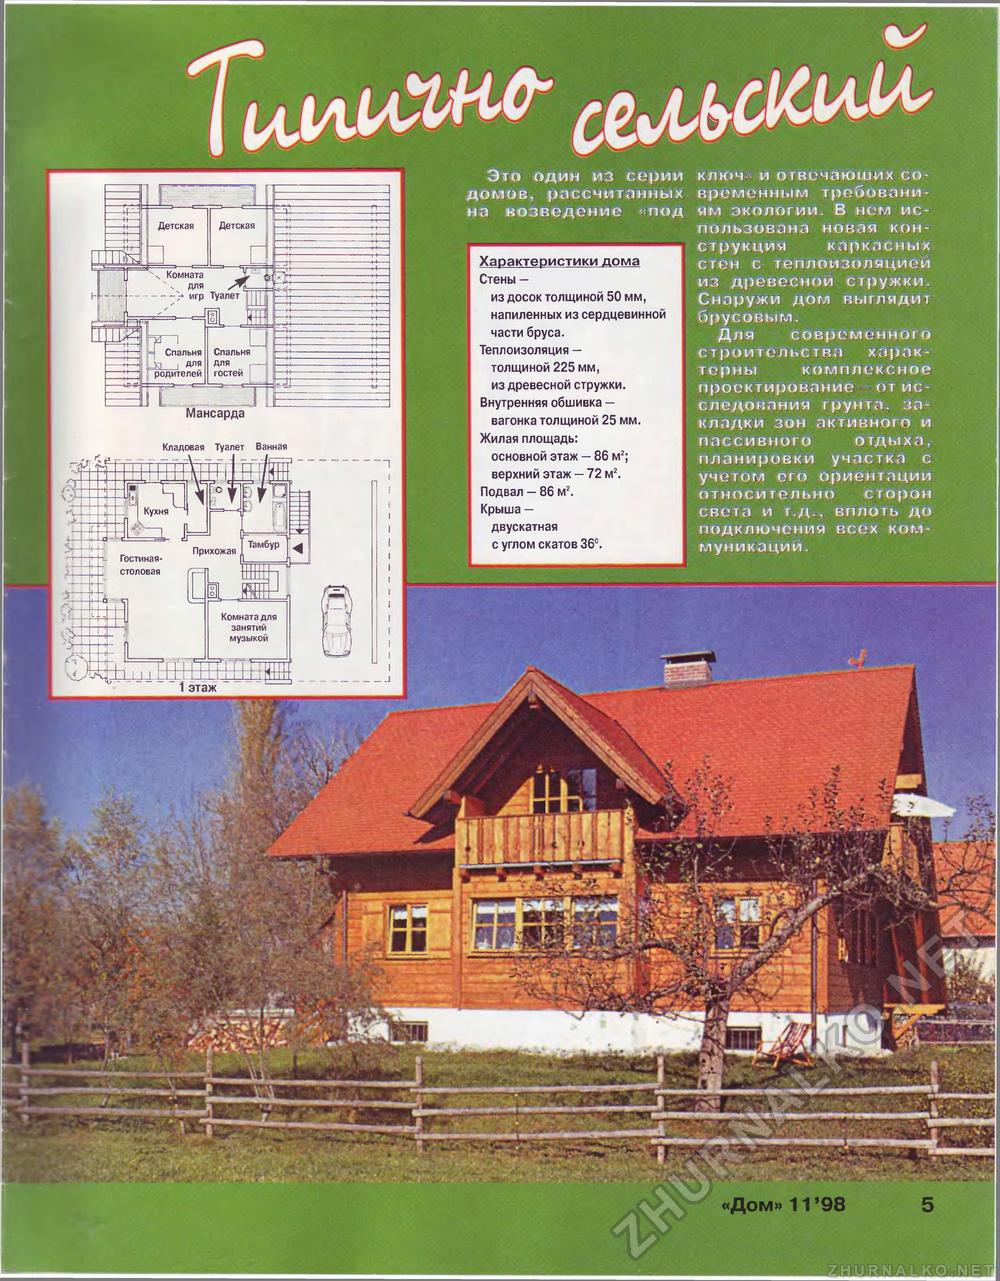 Дом 1998-11, страница 5